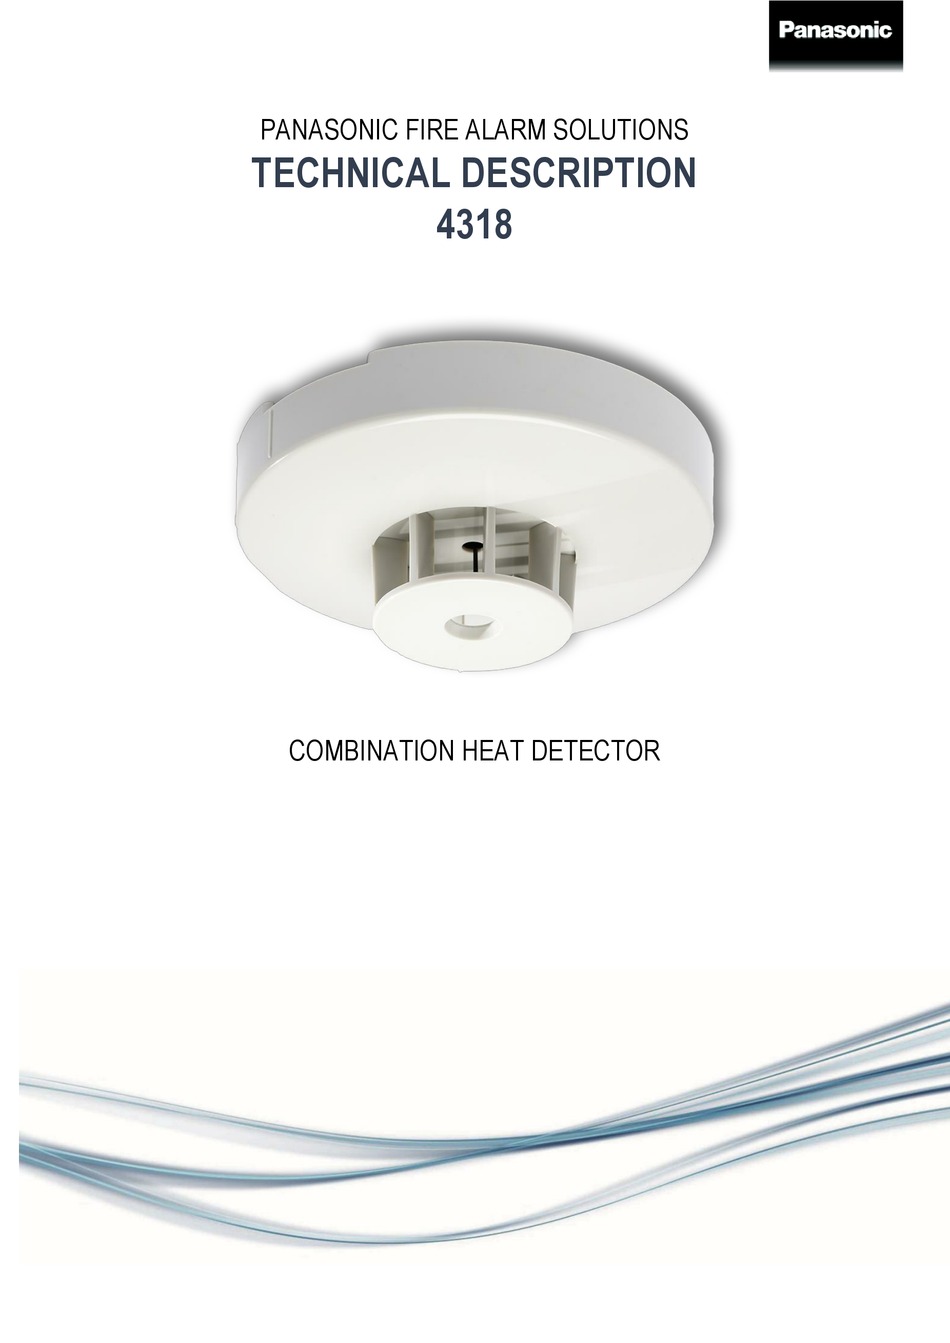 Combination heat detector 4318